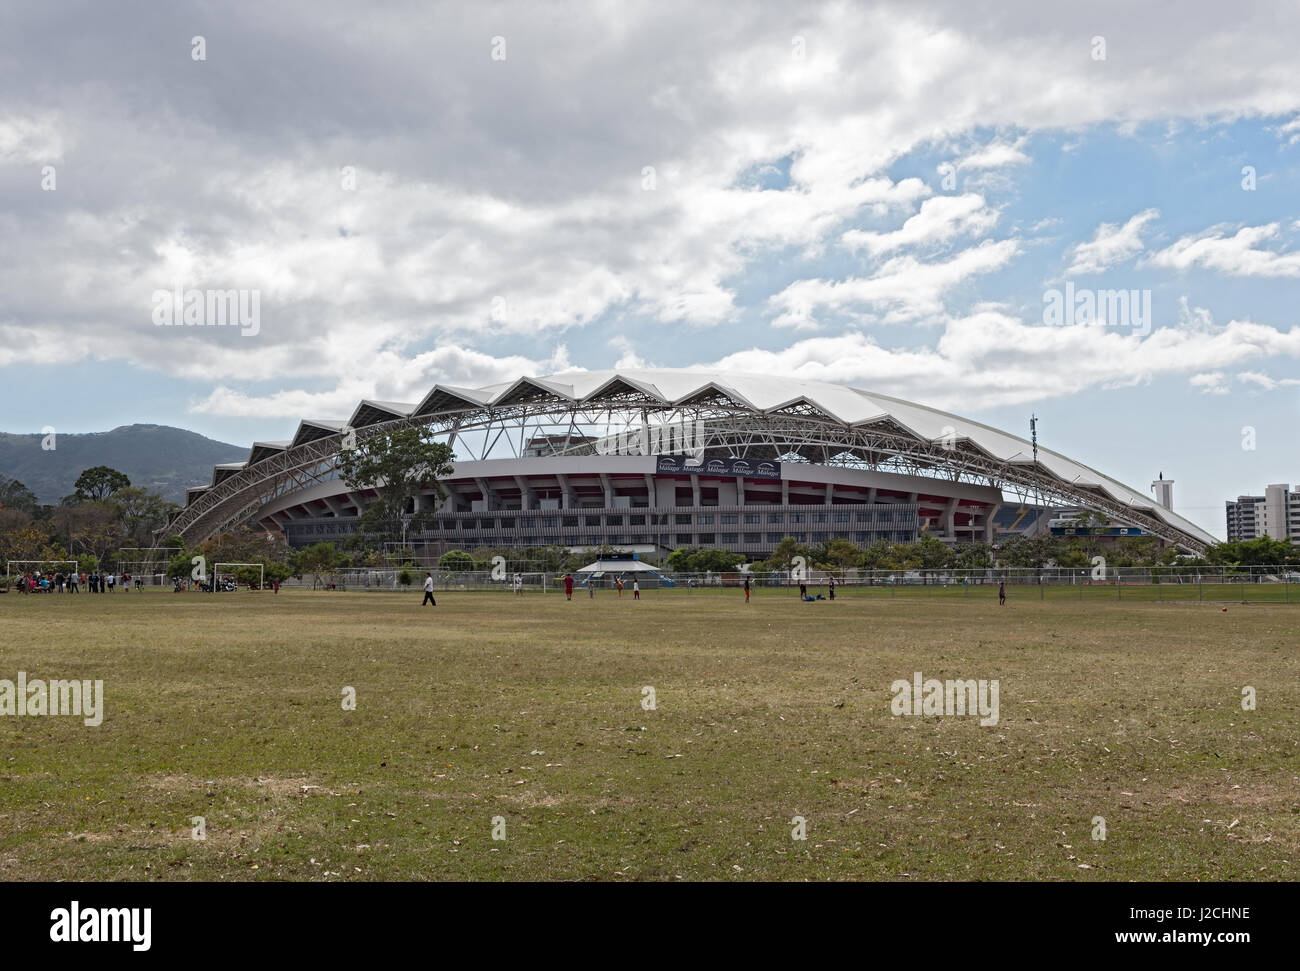 The National Stadium of Costa Rica at La Sabana Park, San Jose, Costa Rica Stock Photo